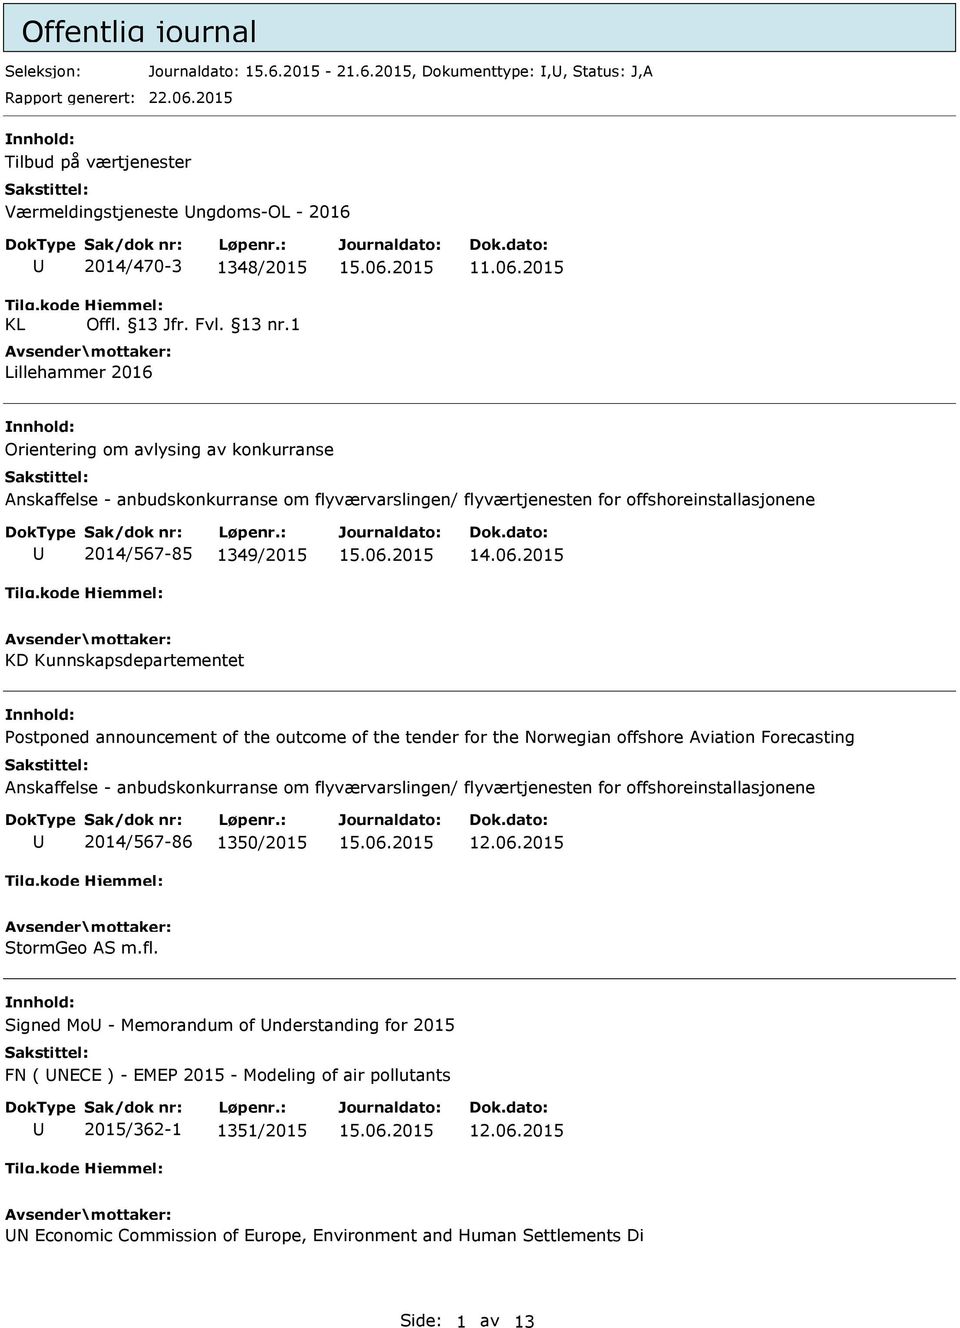 2015 Orientering om avlysing av konkurranse Anskaffelse - anbudskonkurranse om flyværvarslingen/ flyværtjenesten for offshoreinstallasjonene 2014/567-85 1349/2015 14.06.